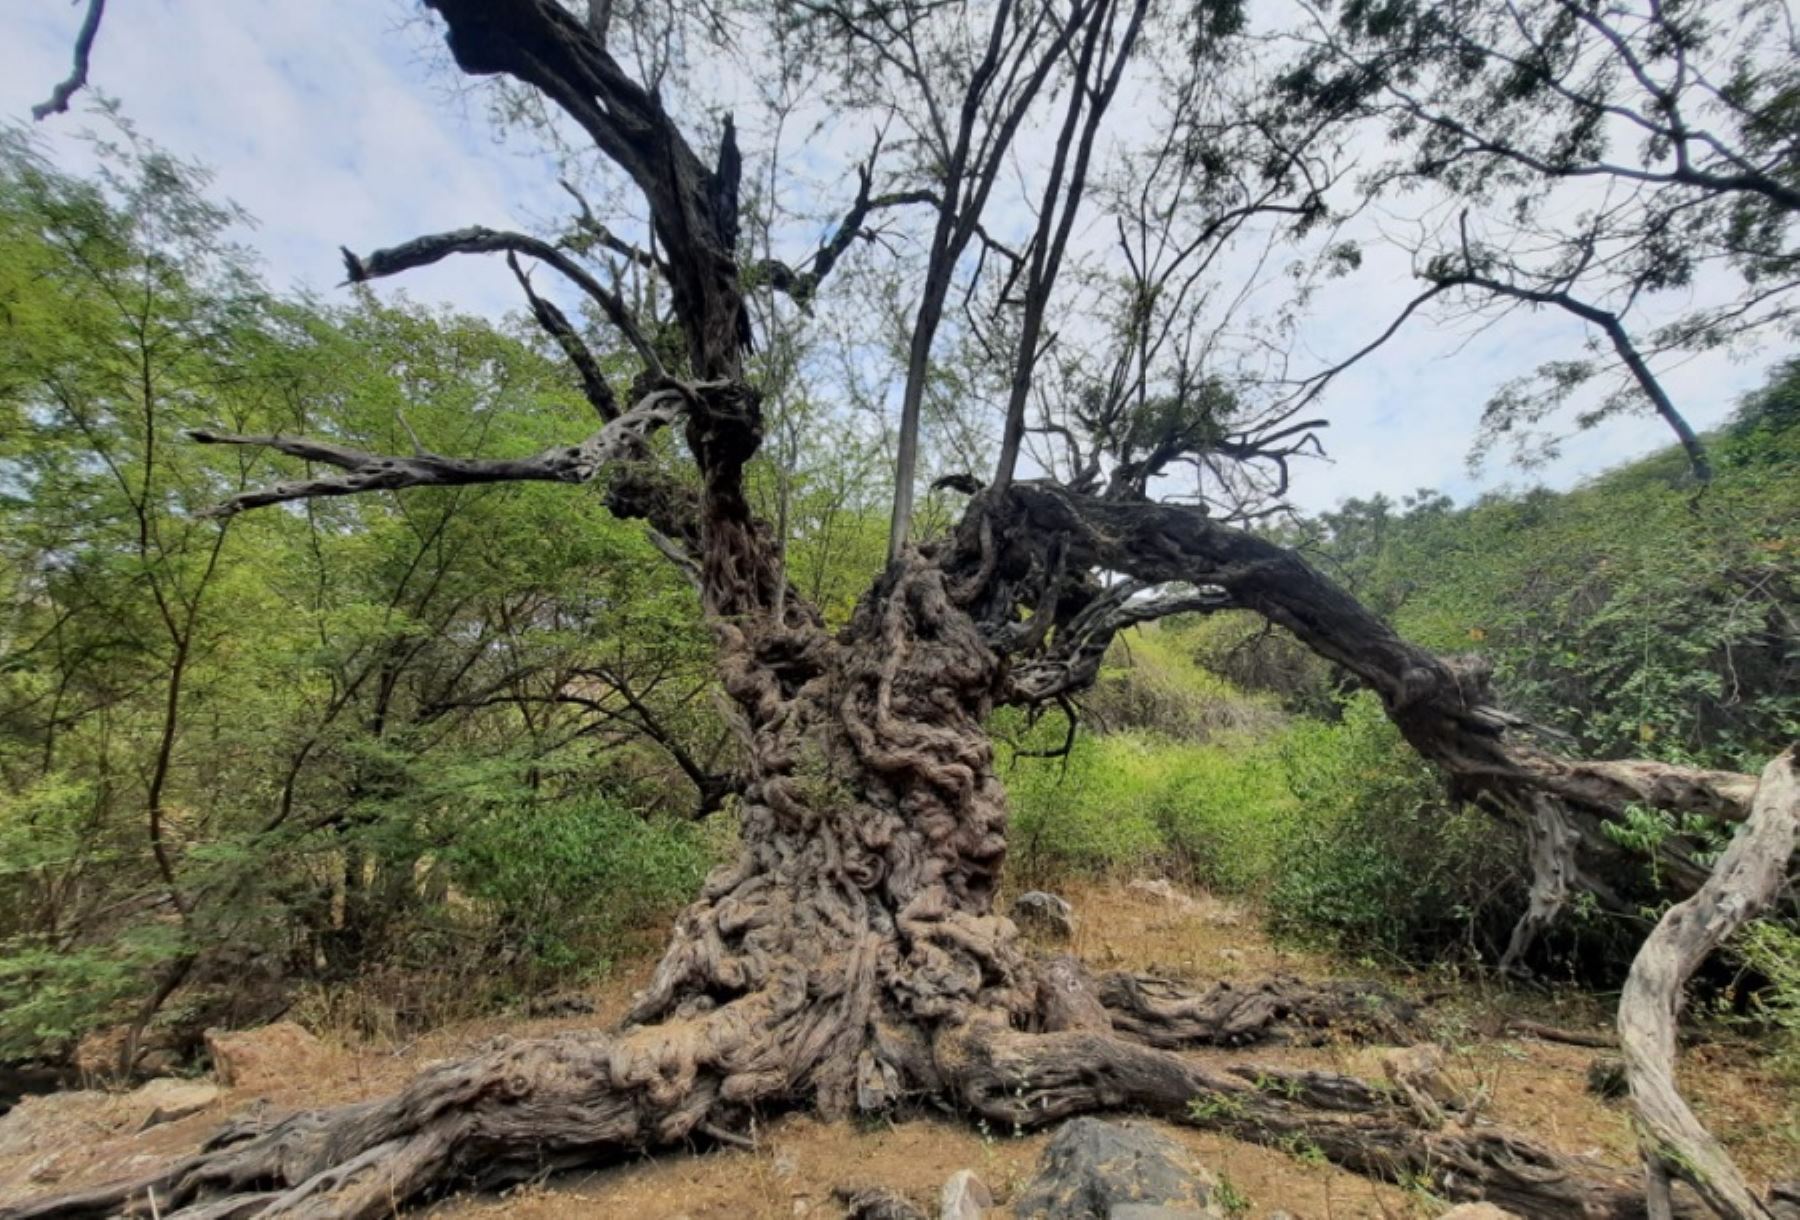 Con el acompañamiento técnico del Servicio Nacional Forestal y de Fauna Silvestre (Serfor), la municipalidad distrital de Motupe reconoció como árbol patrimonial a un algarrobo de aproximadamente 500 años de antigüedad, ubicado en el bosque seco del valle de Motupe, en el departamento de Lambayeque.